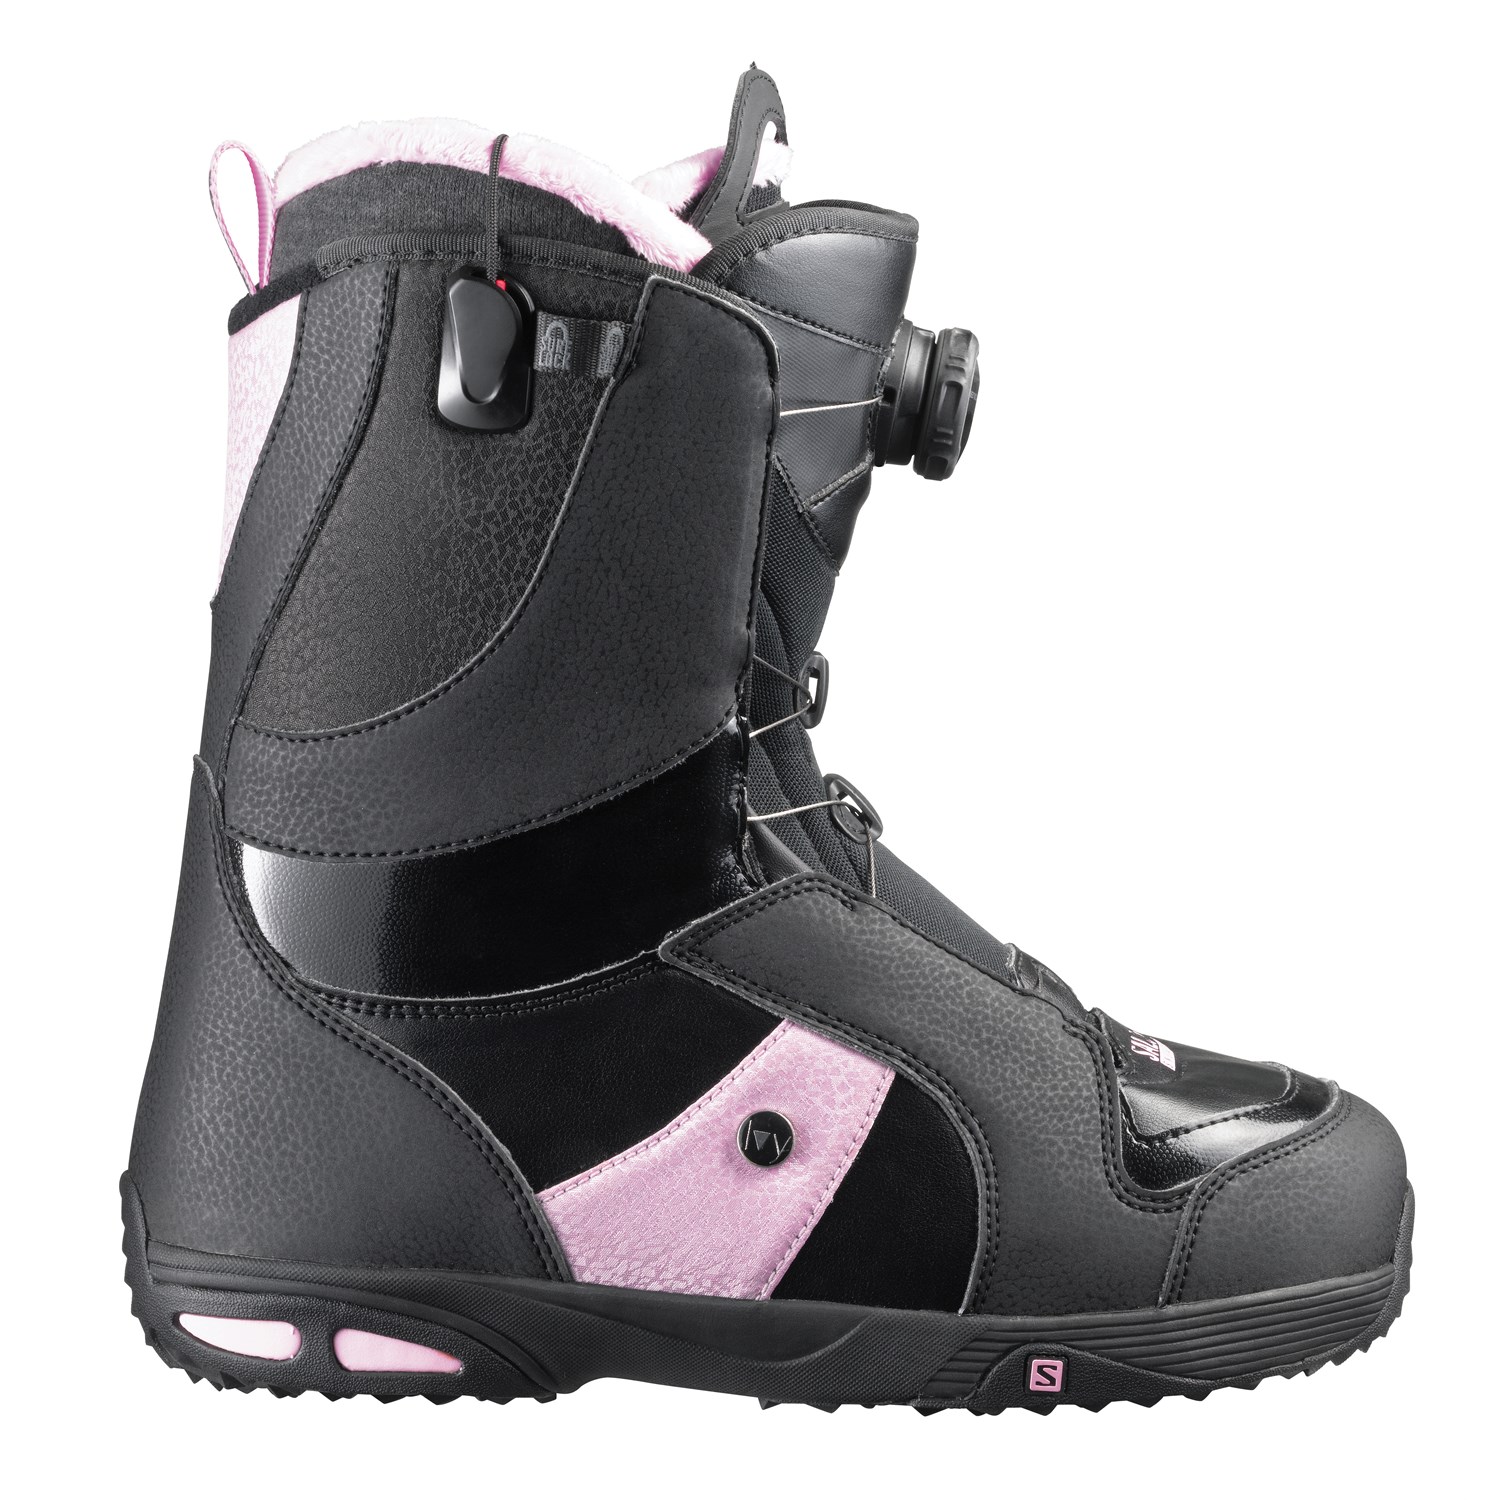 Kleren Polijsten stropdas Salomon Ivy Boa® STR8JKT Snowboard Boots - Women's 2014 | evo